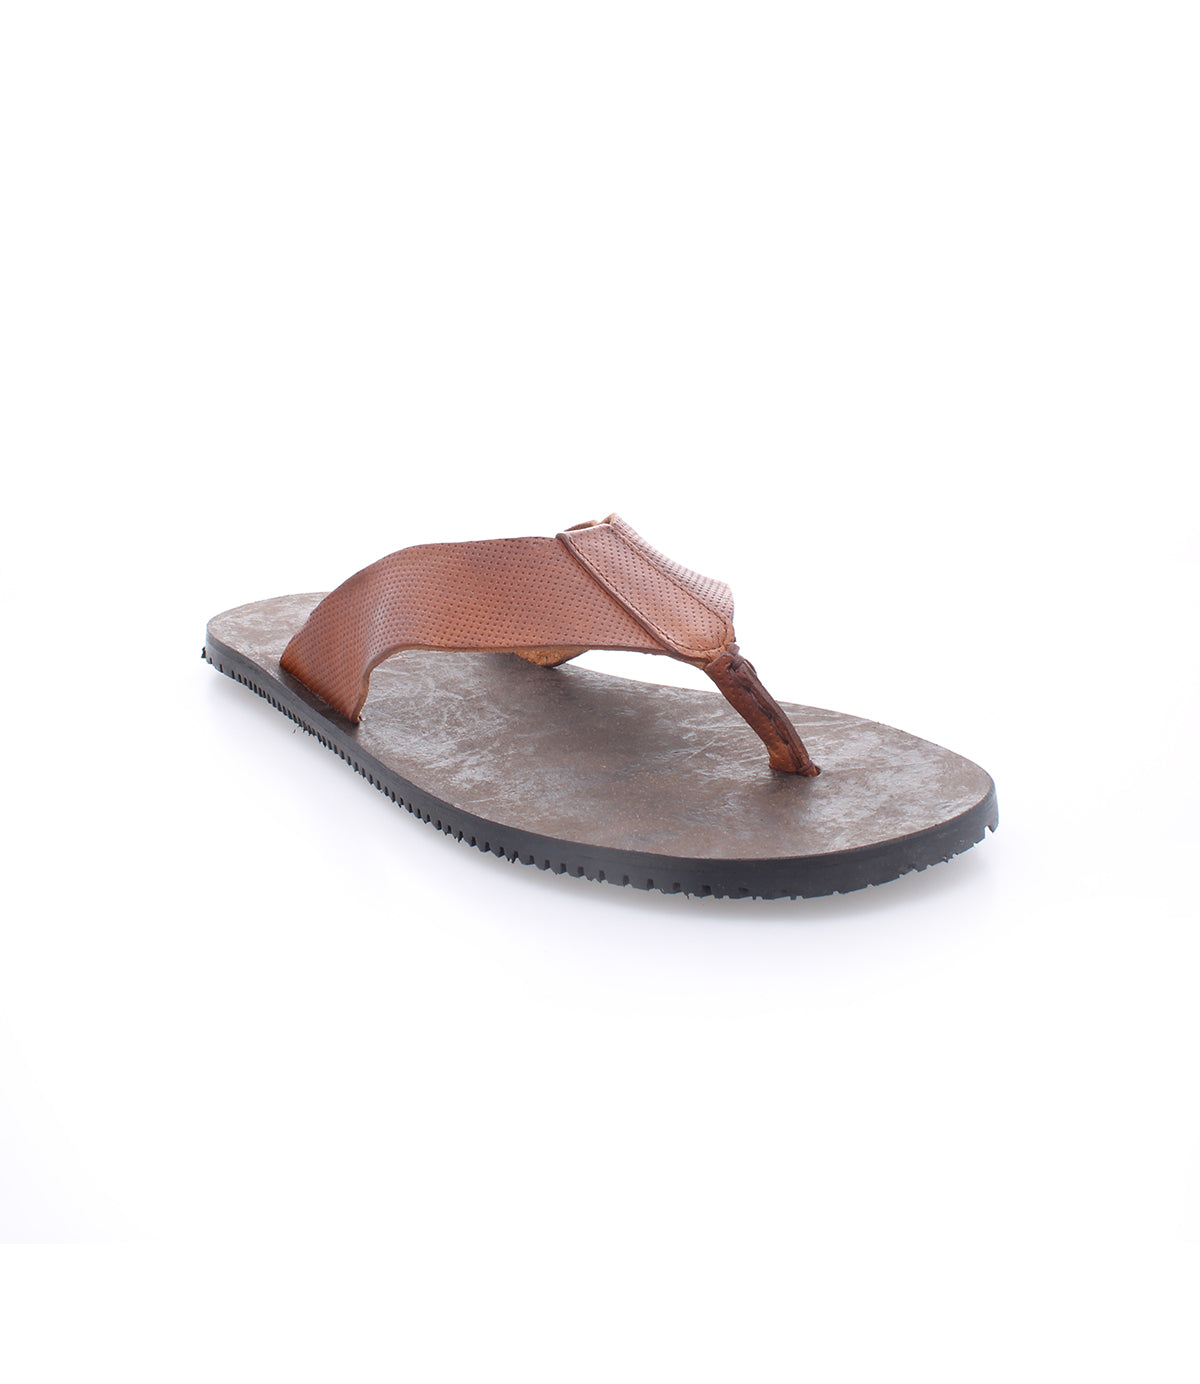 Durable men's Bed Stu Introduce leather flip flop sandals.